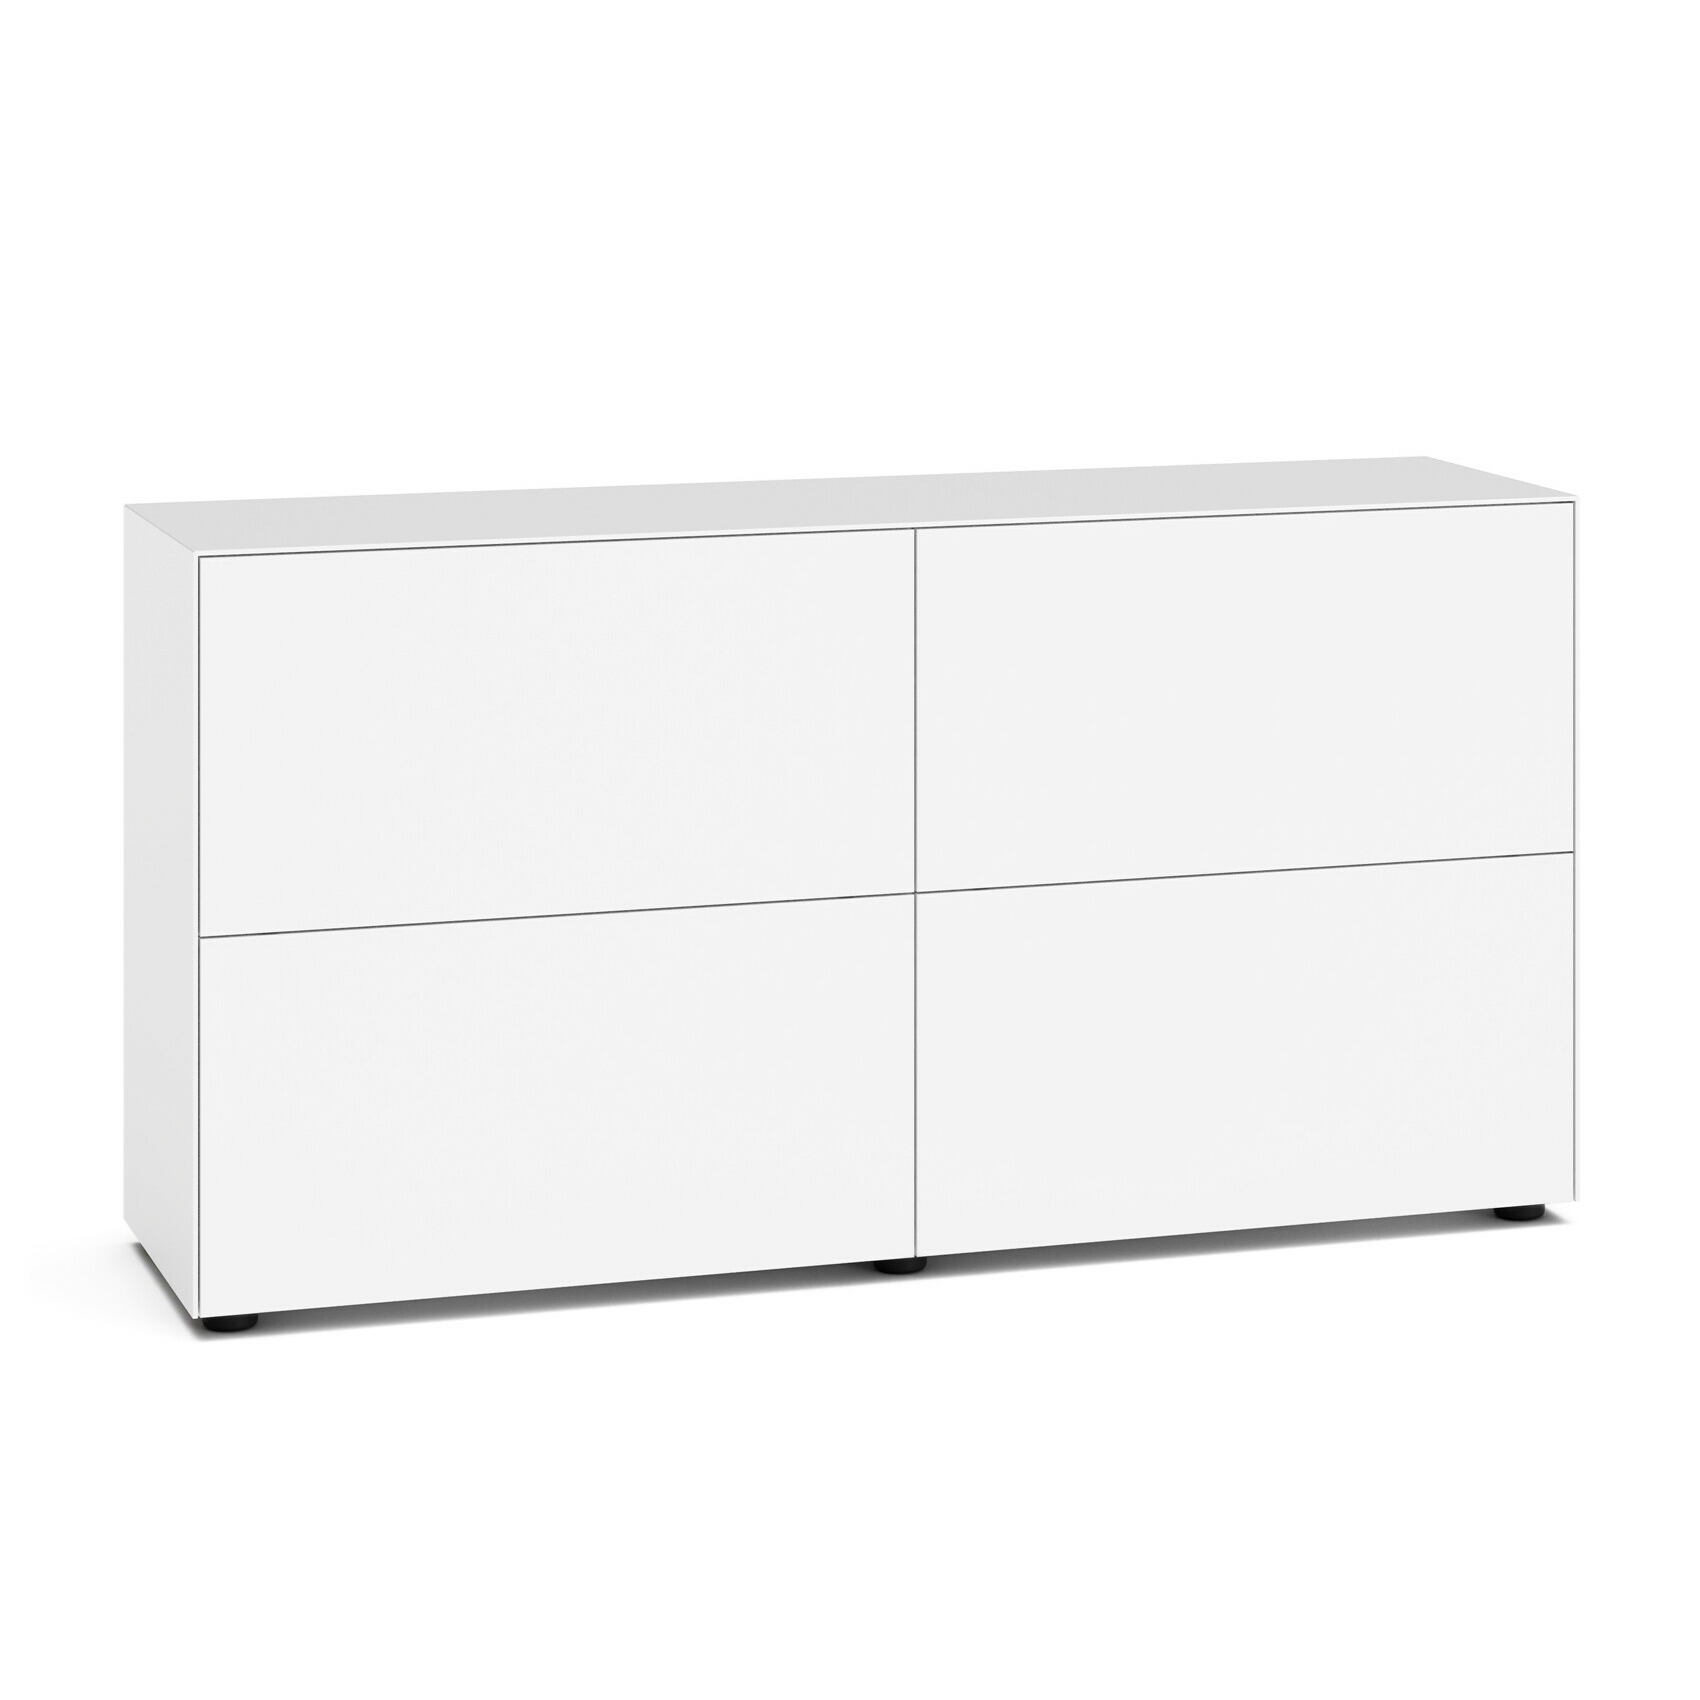 Piure - Nex Pur Office Klapptürbox 150x40x75cm - weiß RAL 9016/MDF matt lackiert/mit Gleitfüßen H 3cm/2x Fachboden von Piure